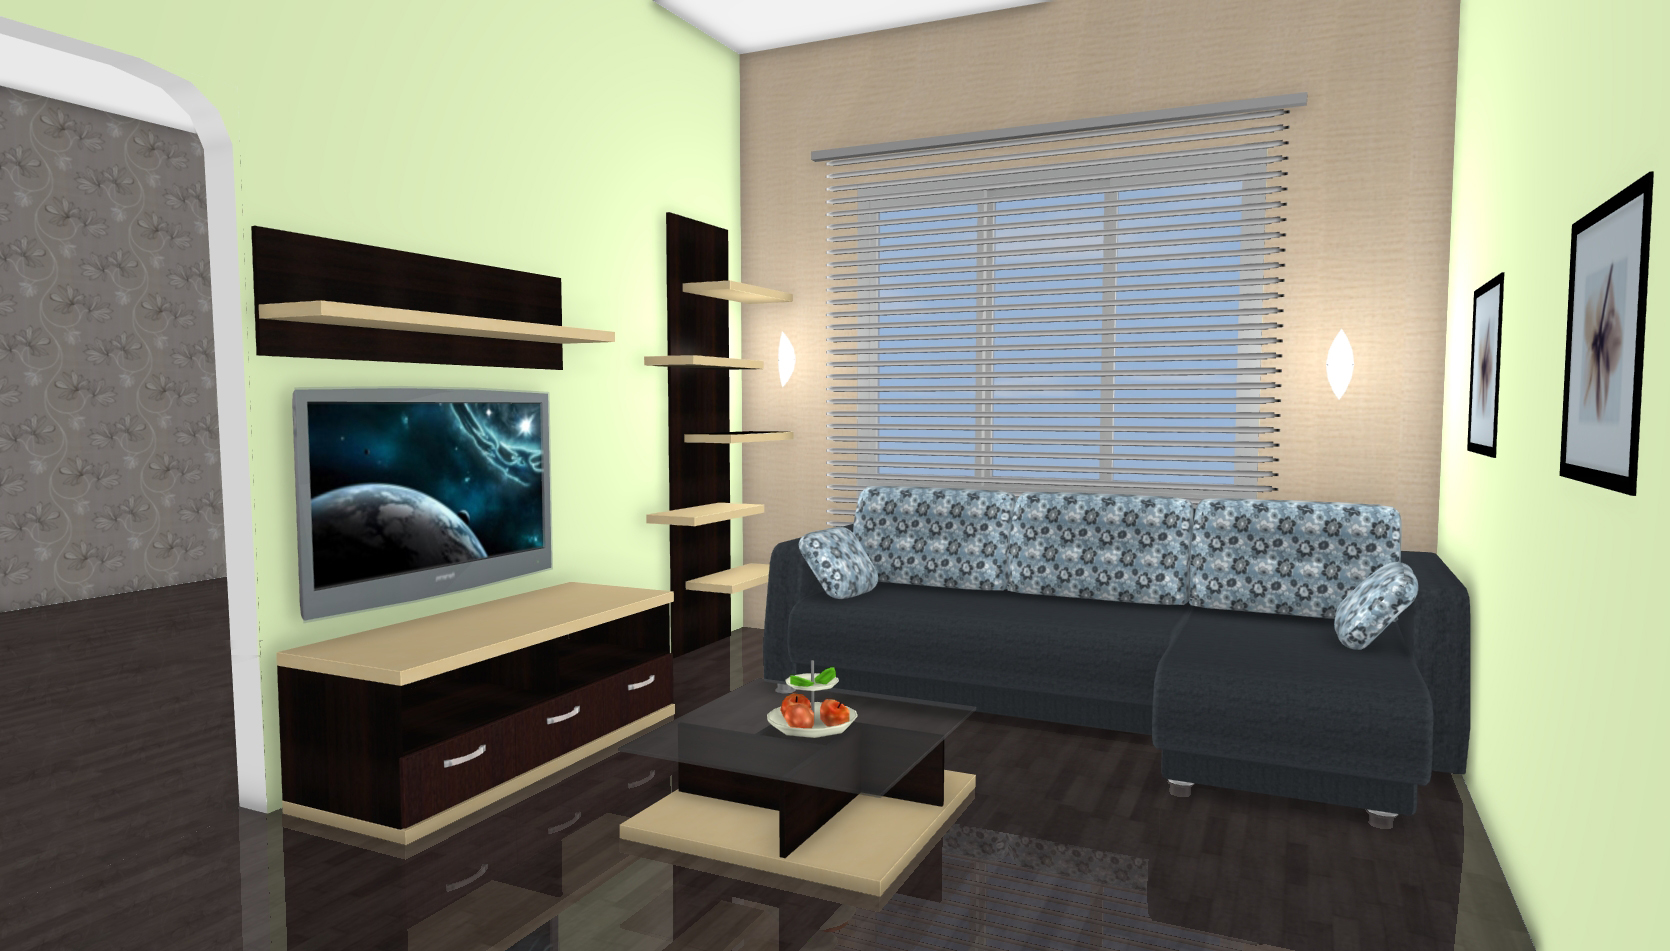 Онлайн дизайн интерьера комнаты бесплатно по размерам